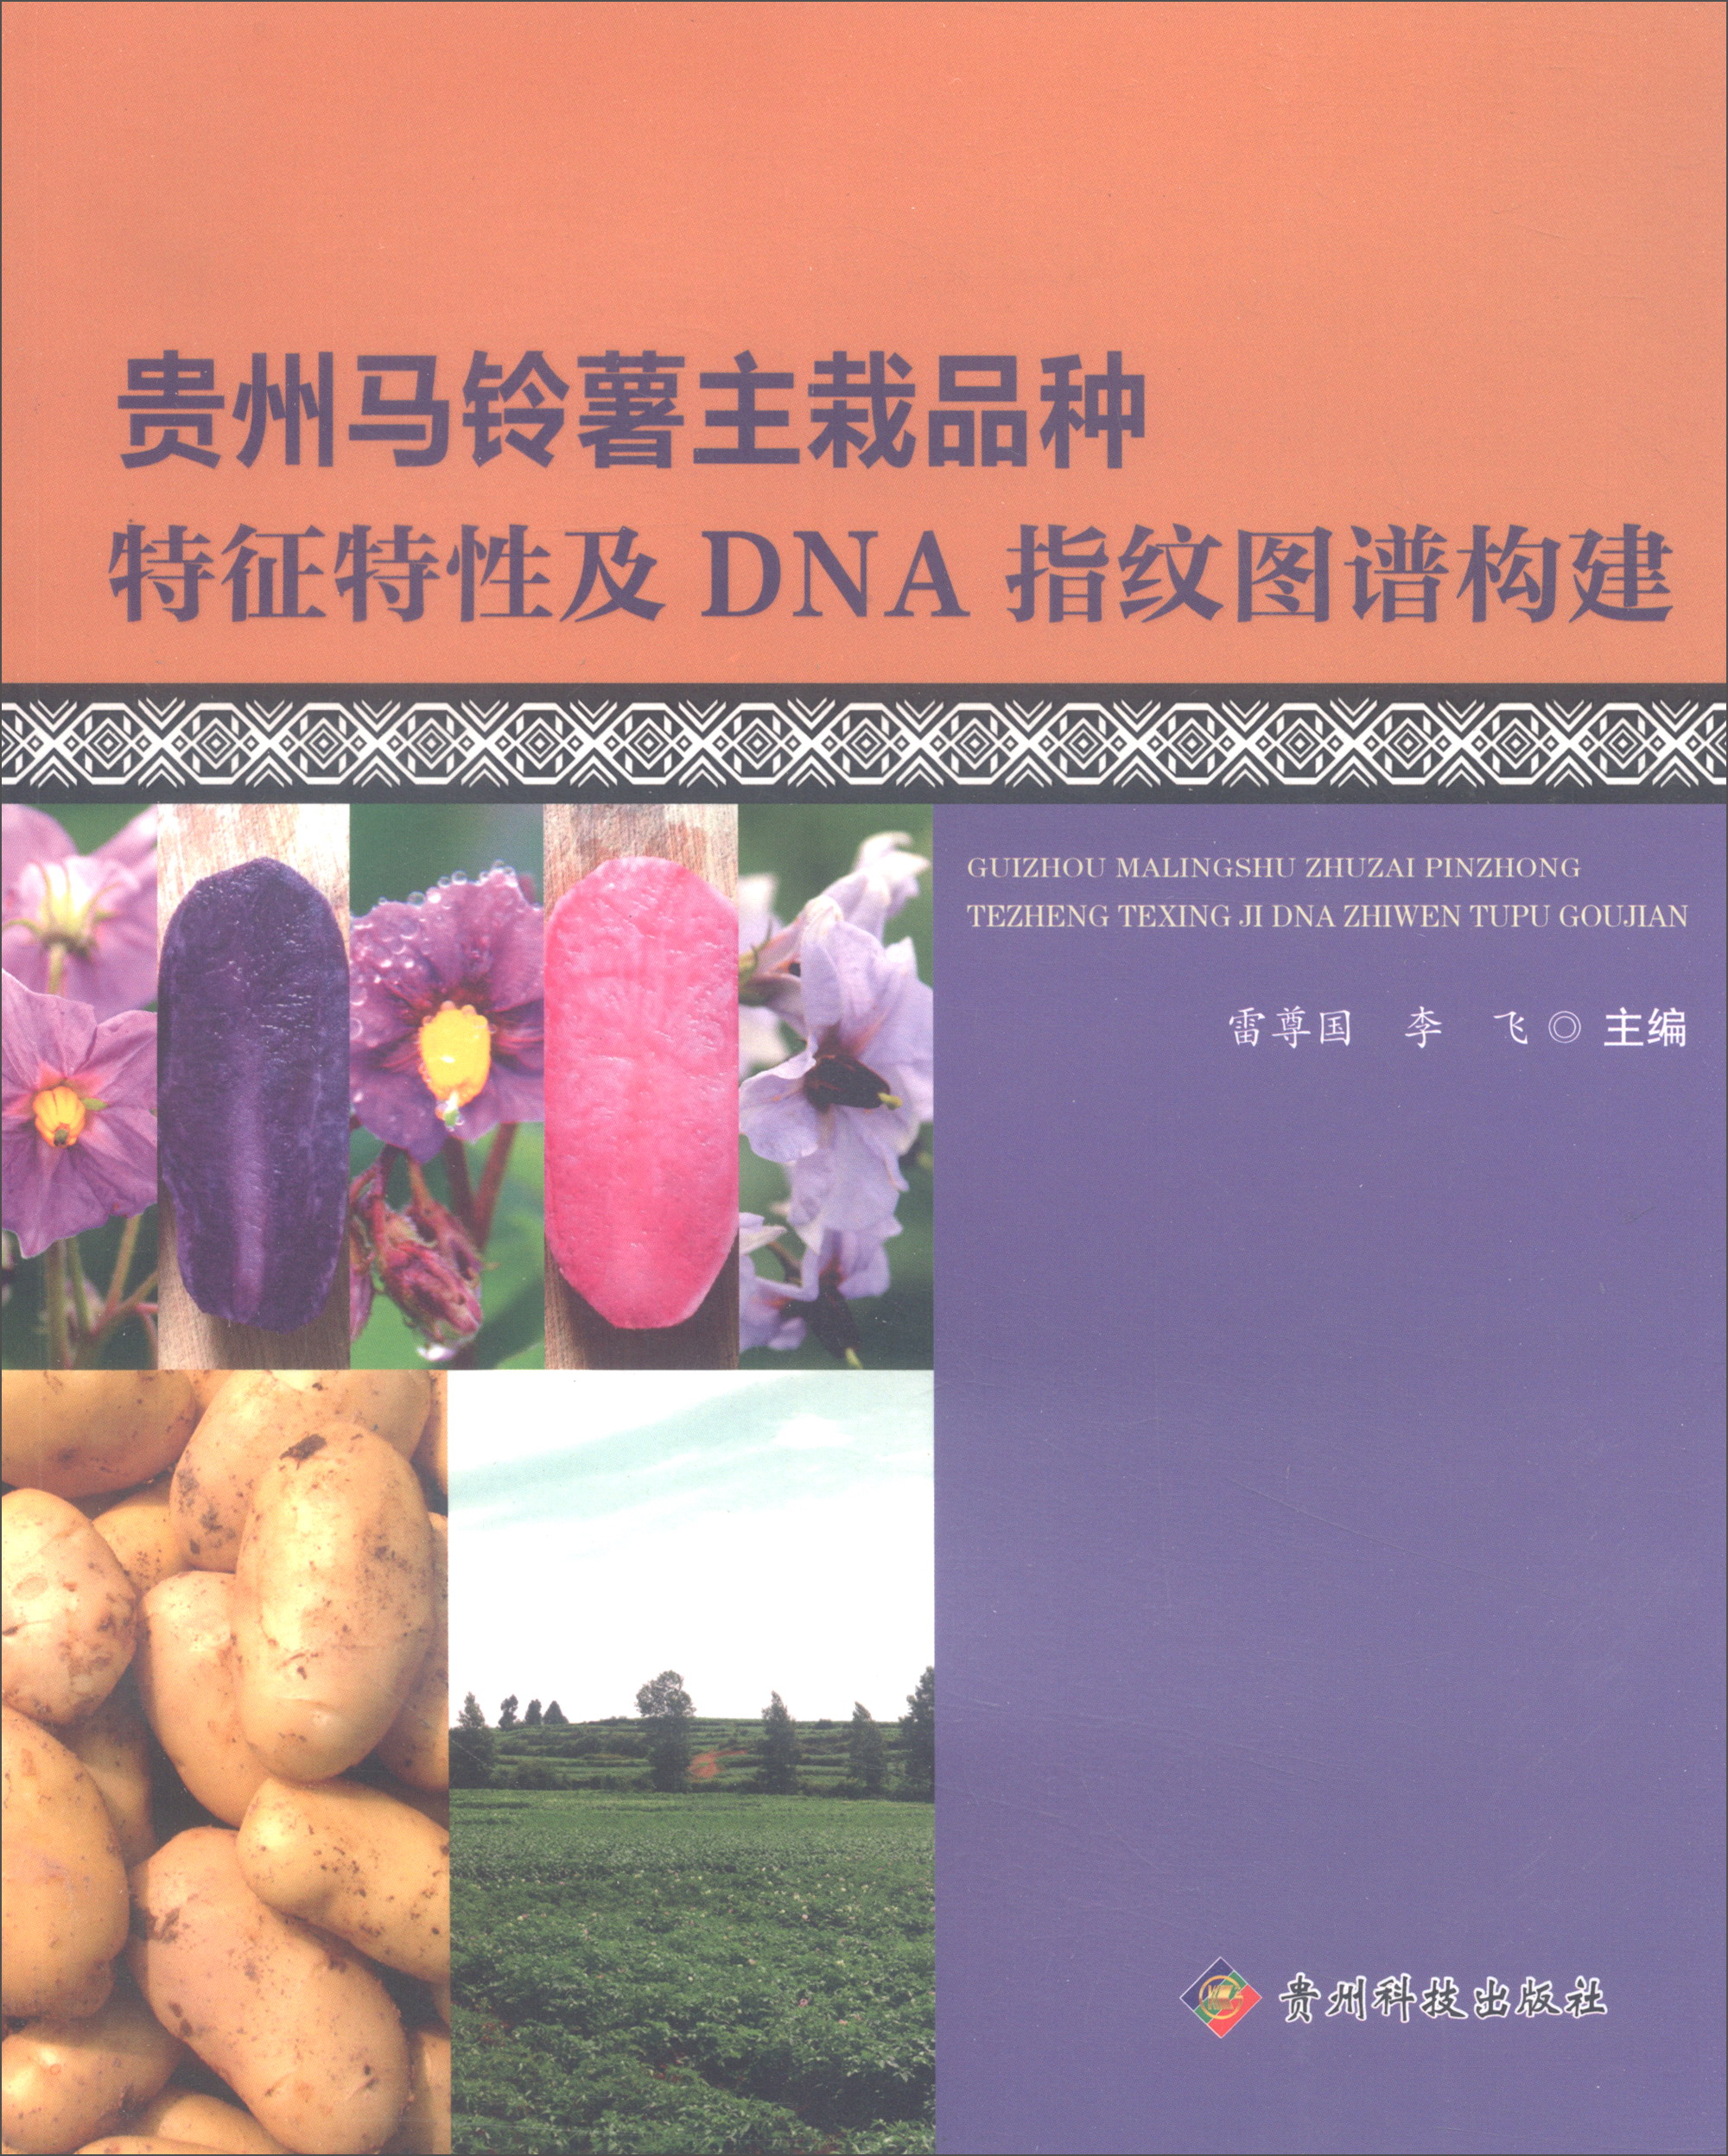 贵州马铃薯主栽品种特征特性及DNA指纹图谱构建 word格式下载